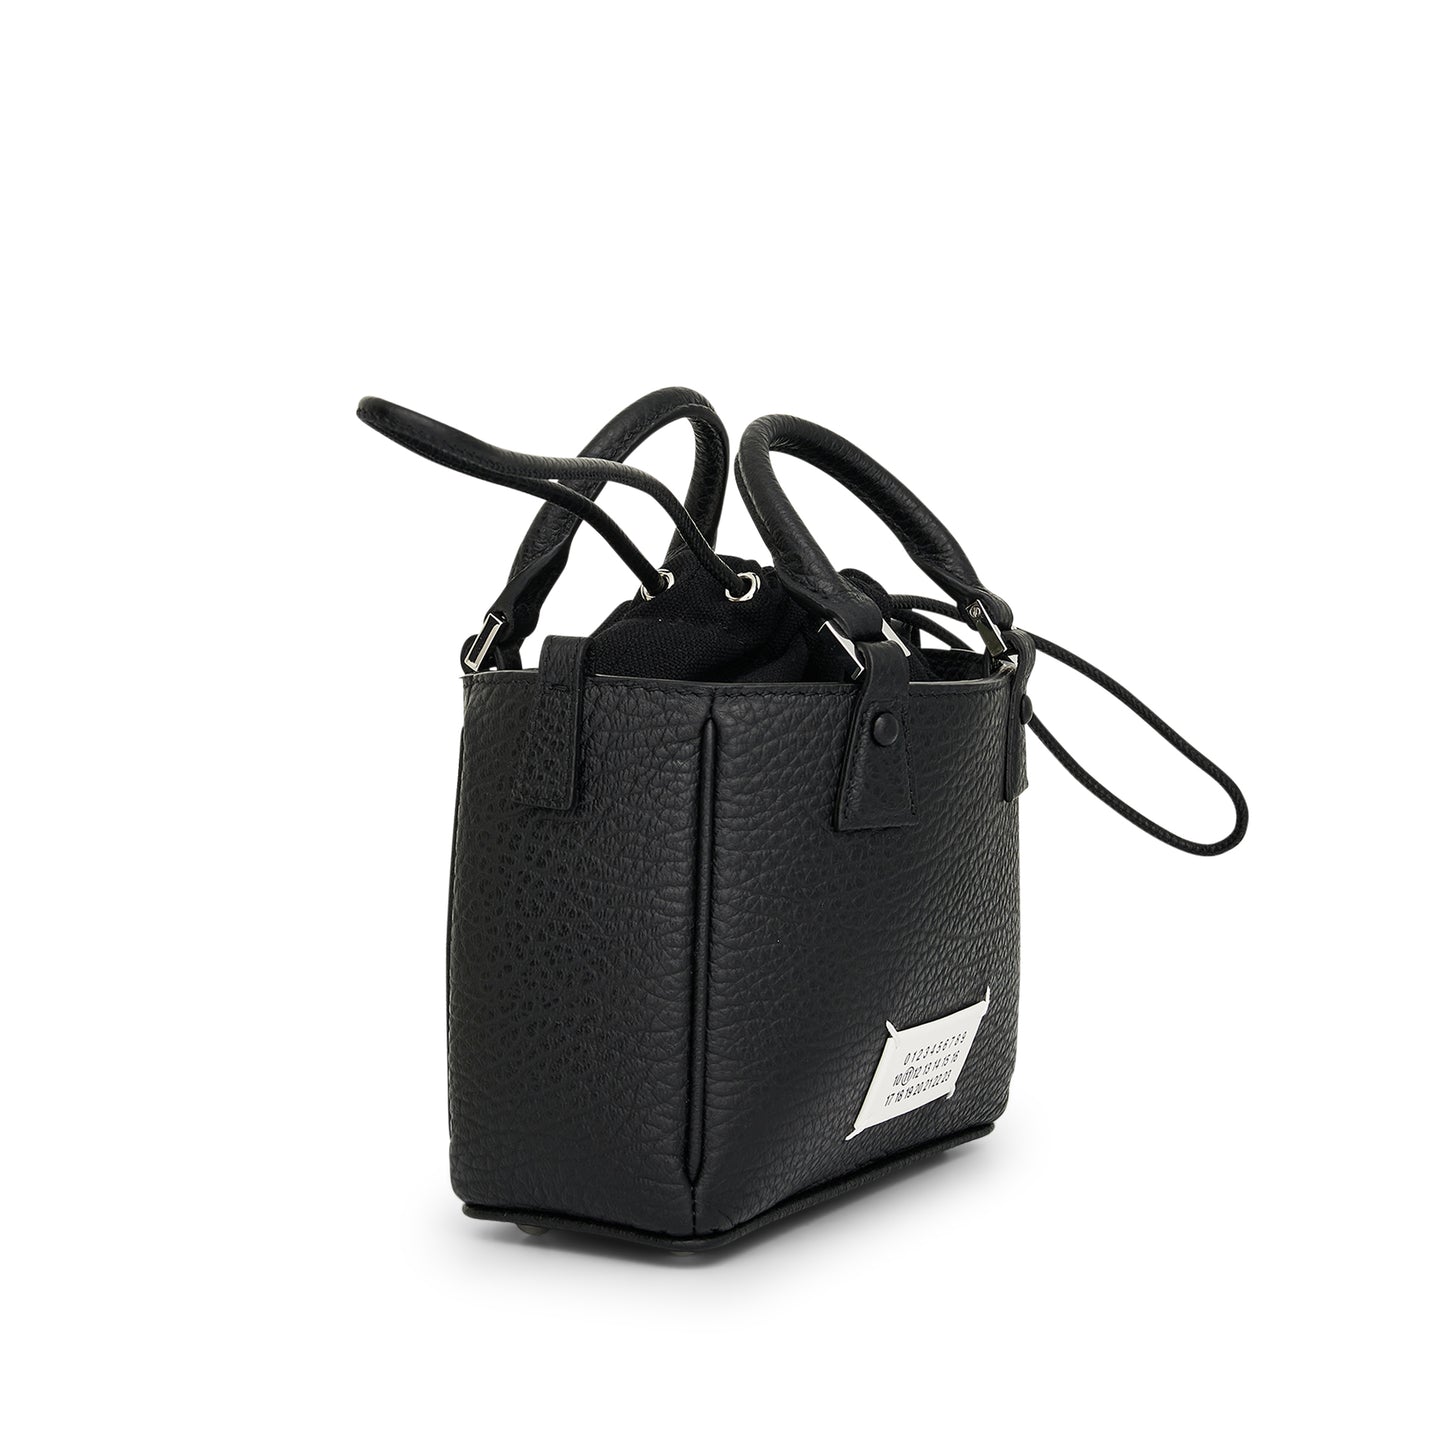 5AC Horizontal Tote Bag in Black